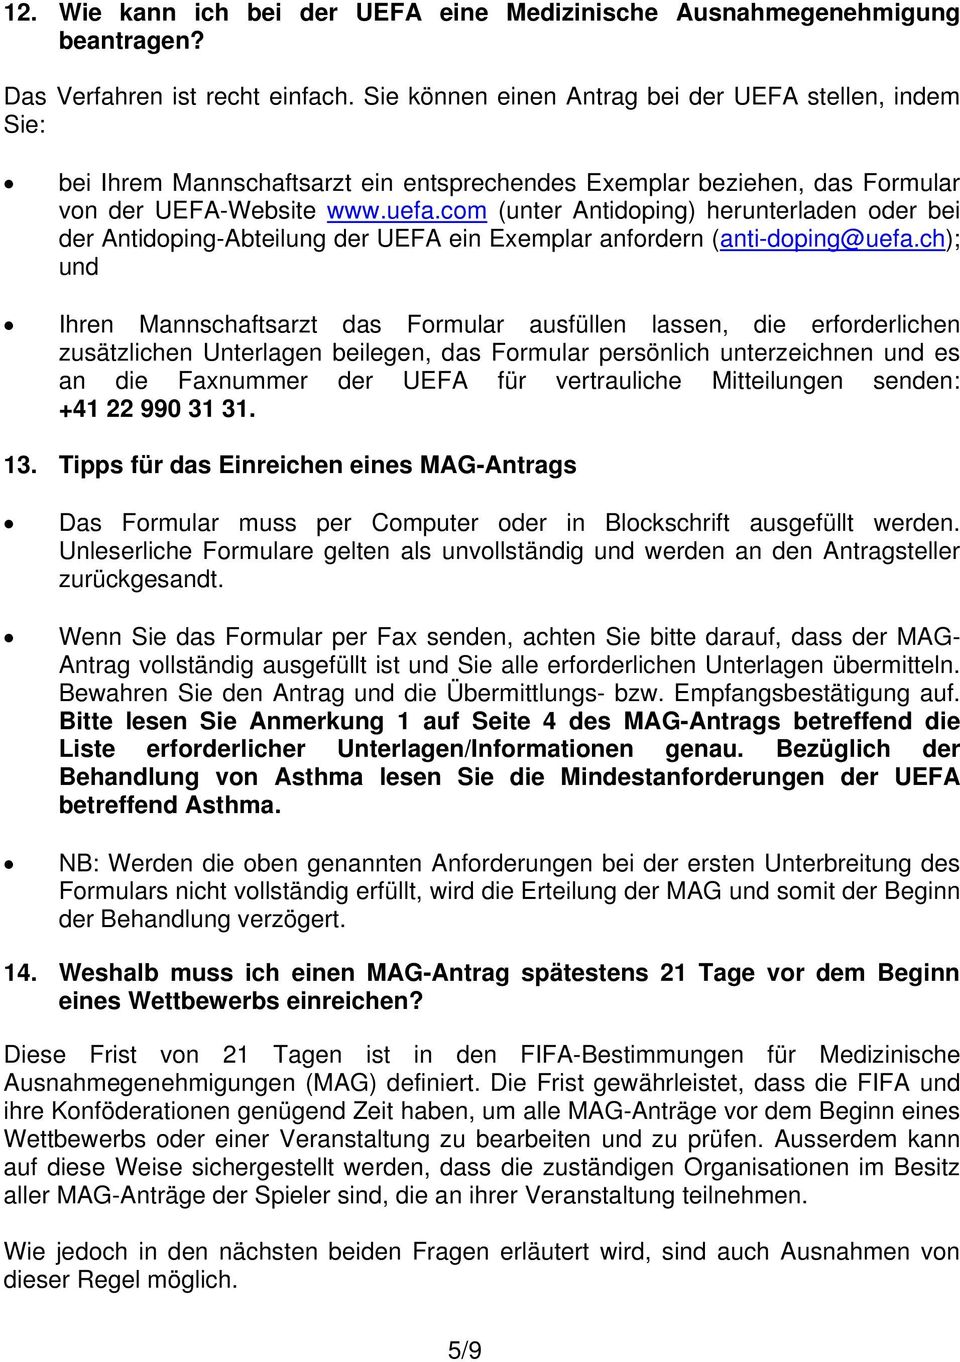 com (unter Antidoping) herunterladen oder bei der Antidoping-Abteilung der UEFA ein Exemplar anfordern (anti-doping@uefa.